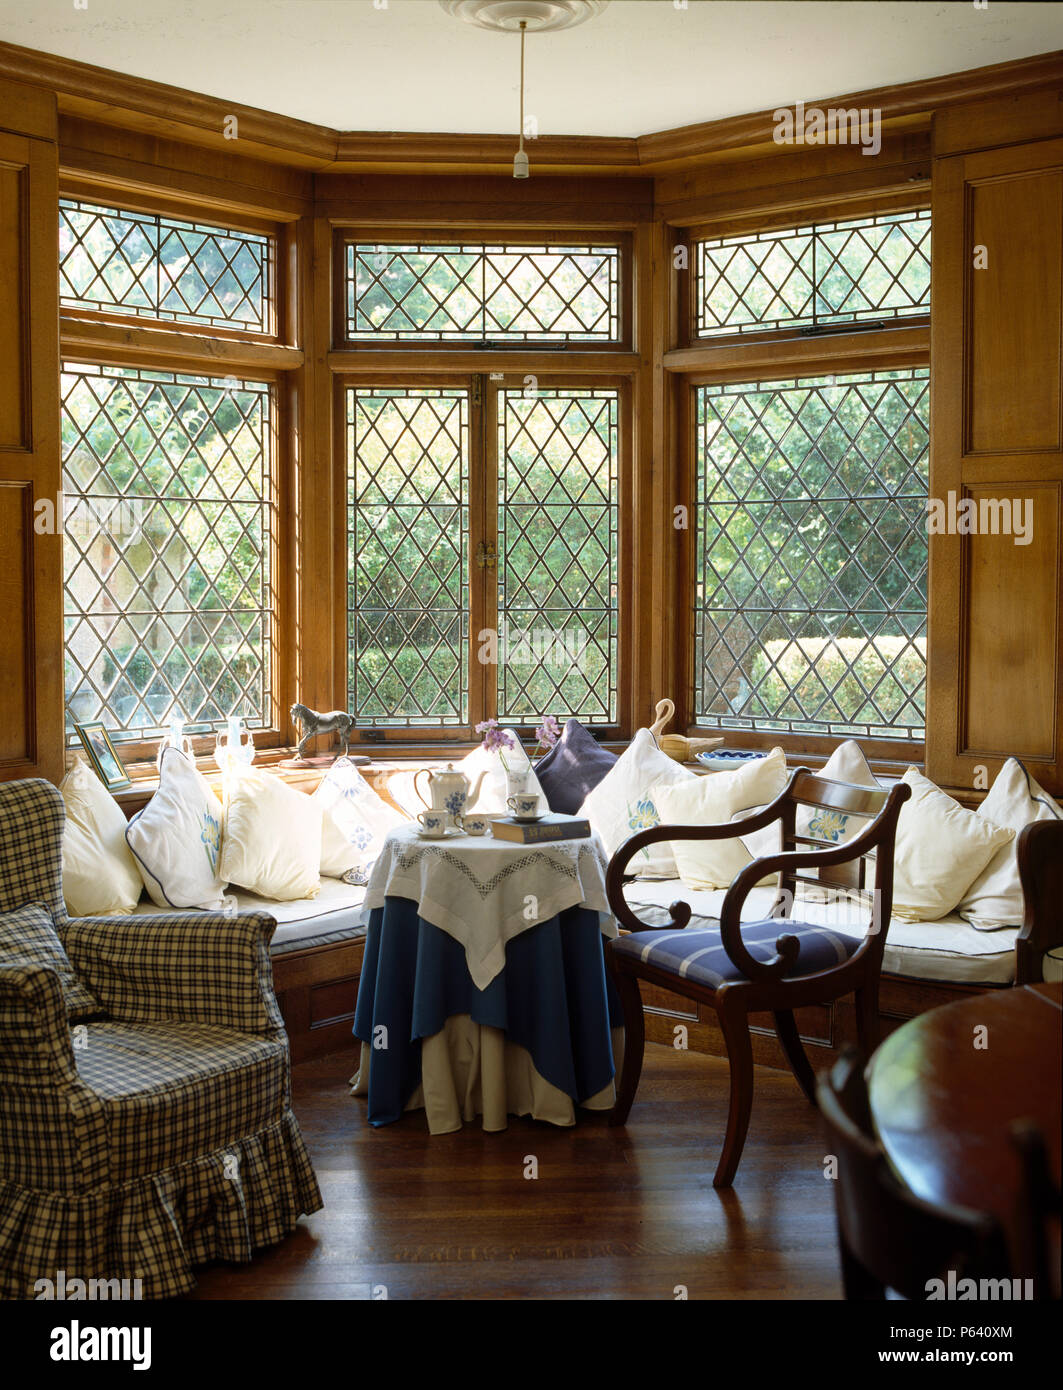 Cuscini bianchi sulla finestra al di sotto del sedile traliccio bay window nel paese la stanza di seduta Foto Stock